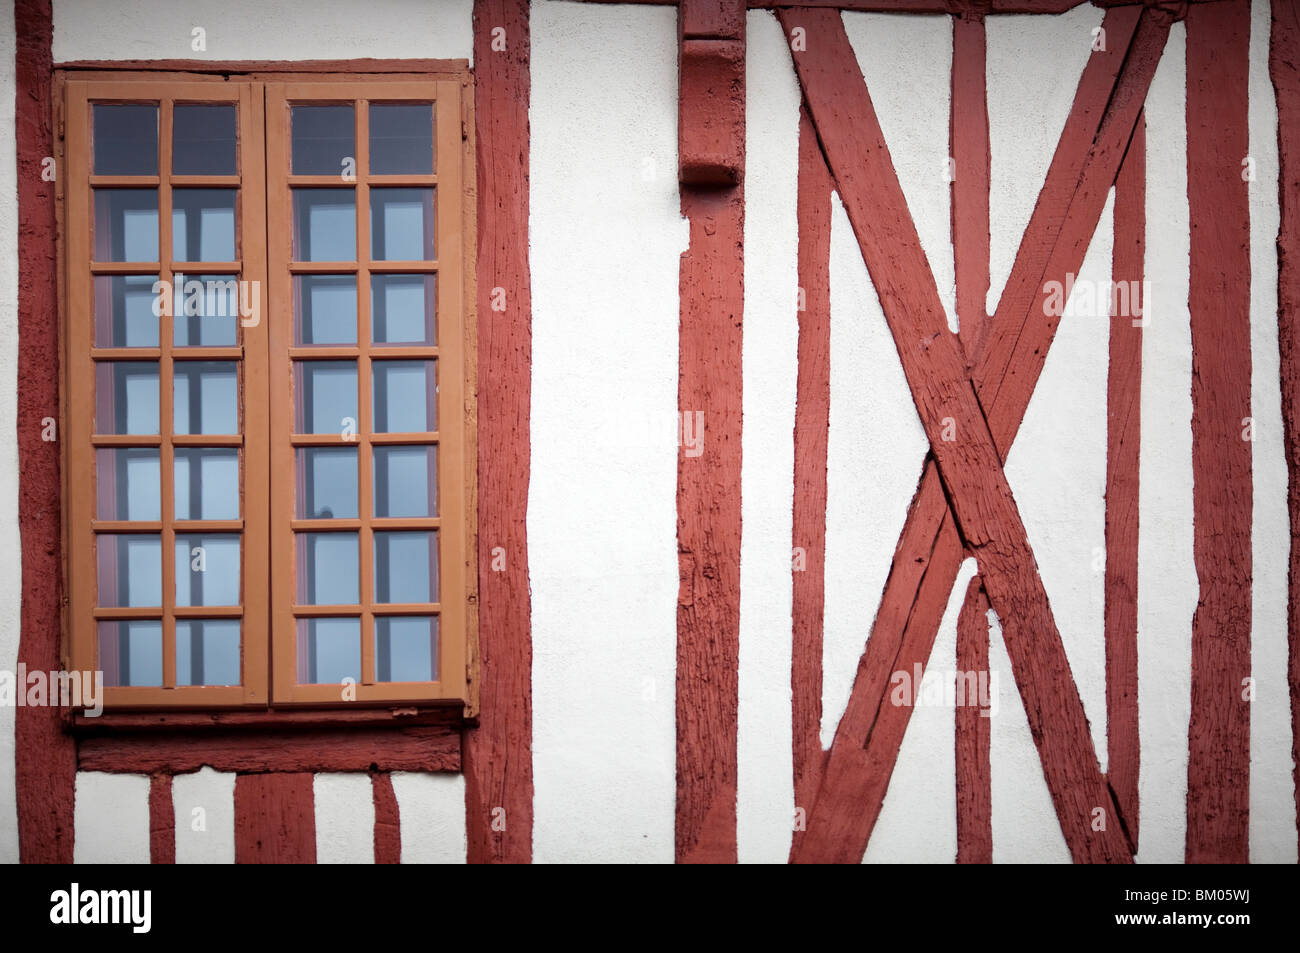 Détail de la façade d'une maison typique, Vannes, département du Morbihan, Bretagne, France Banque D'Images